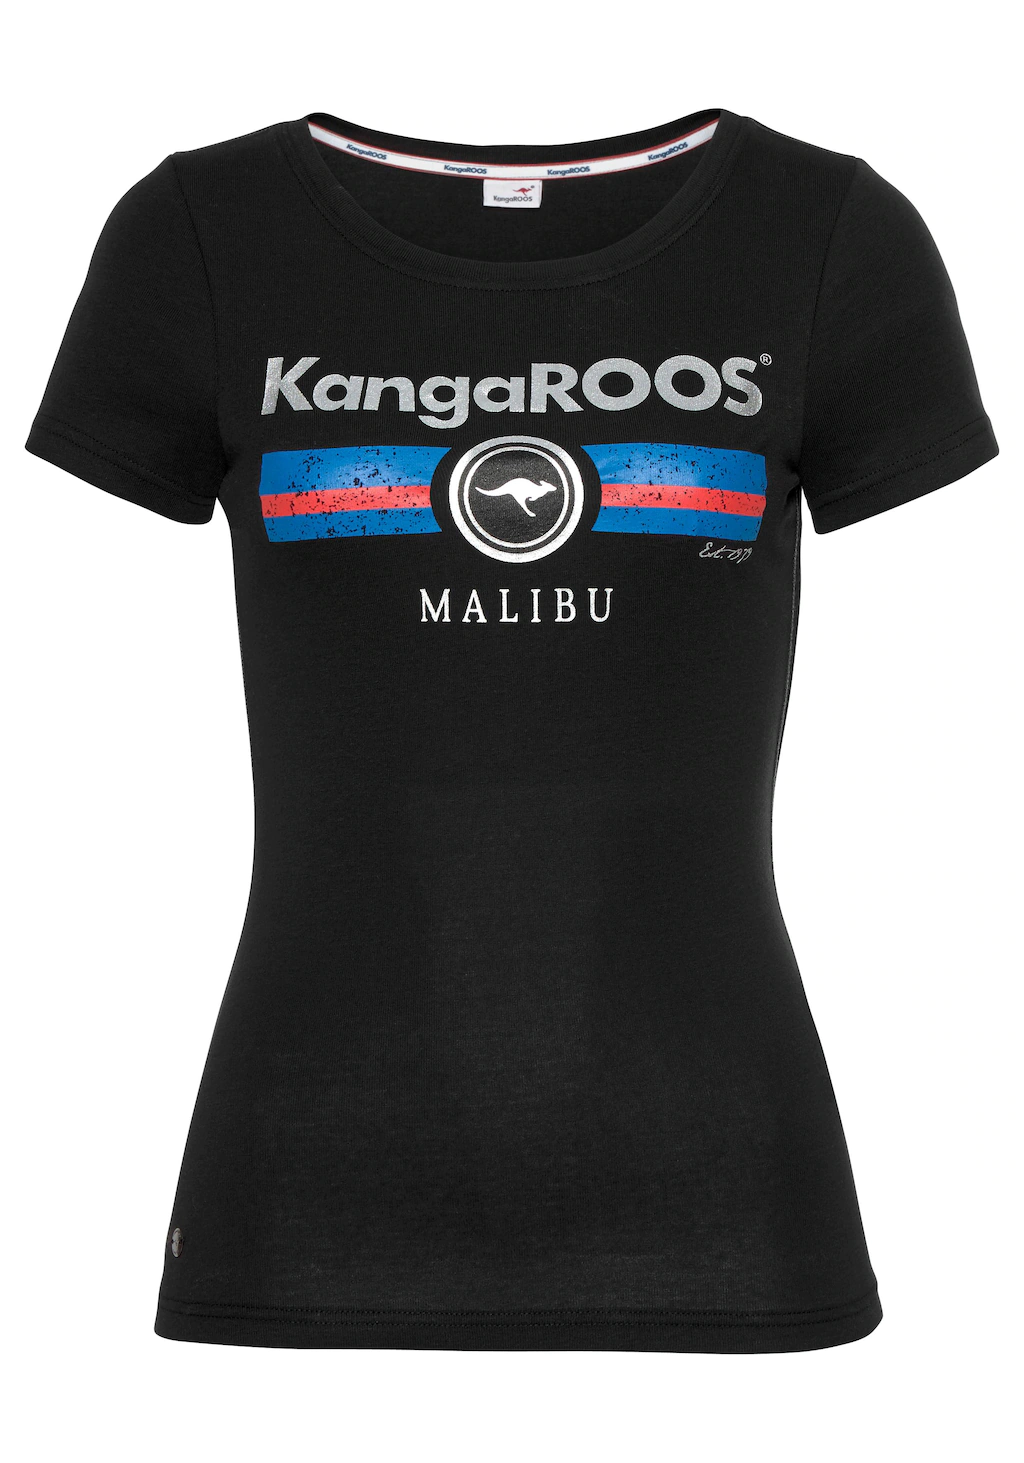 KangaROOS T-Shirt mit Label Metallic Print günstig online kaufen